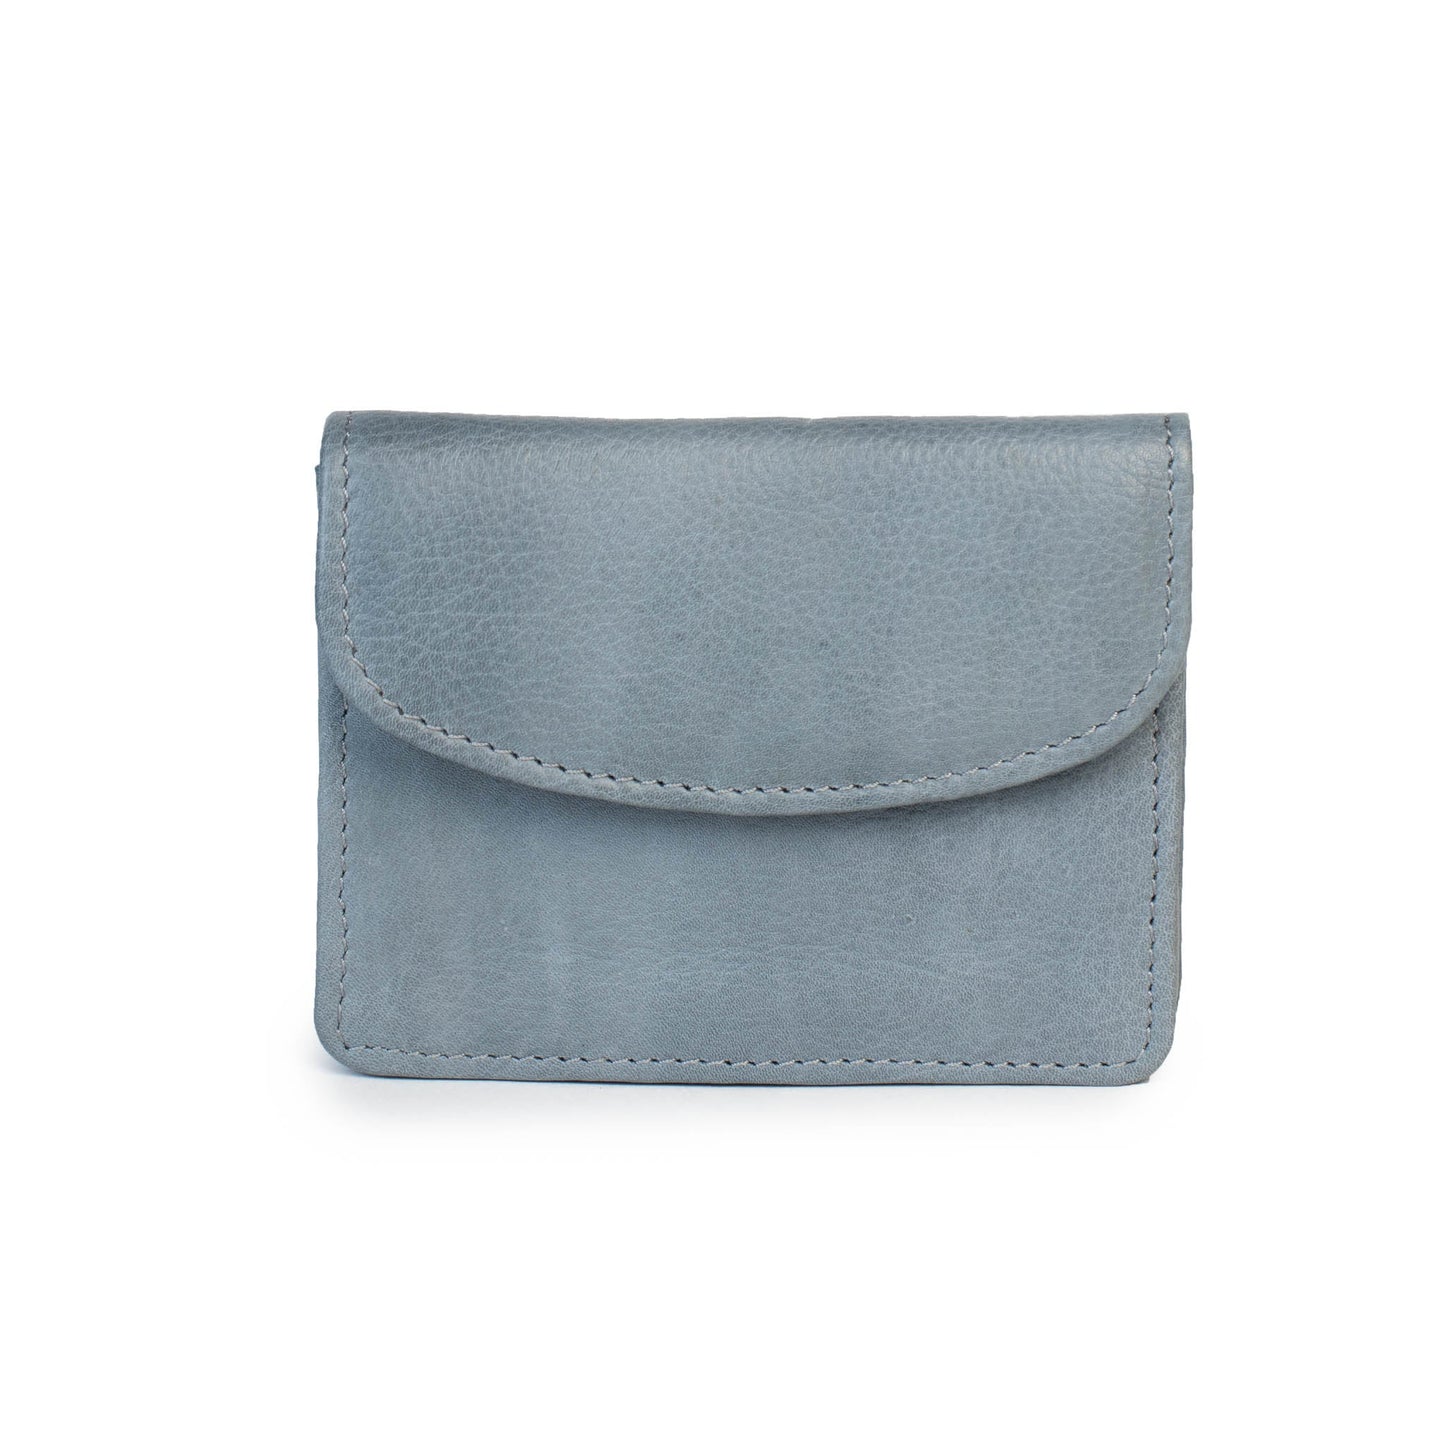 kitt purse steel grey